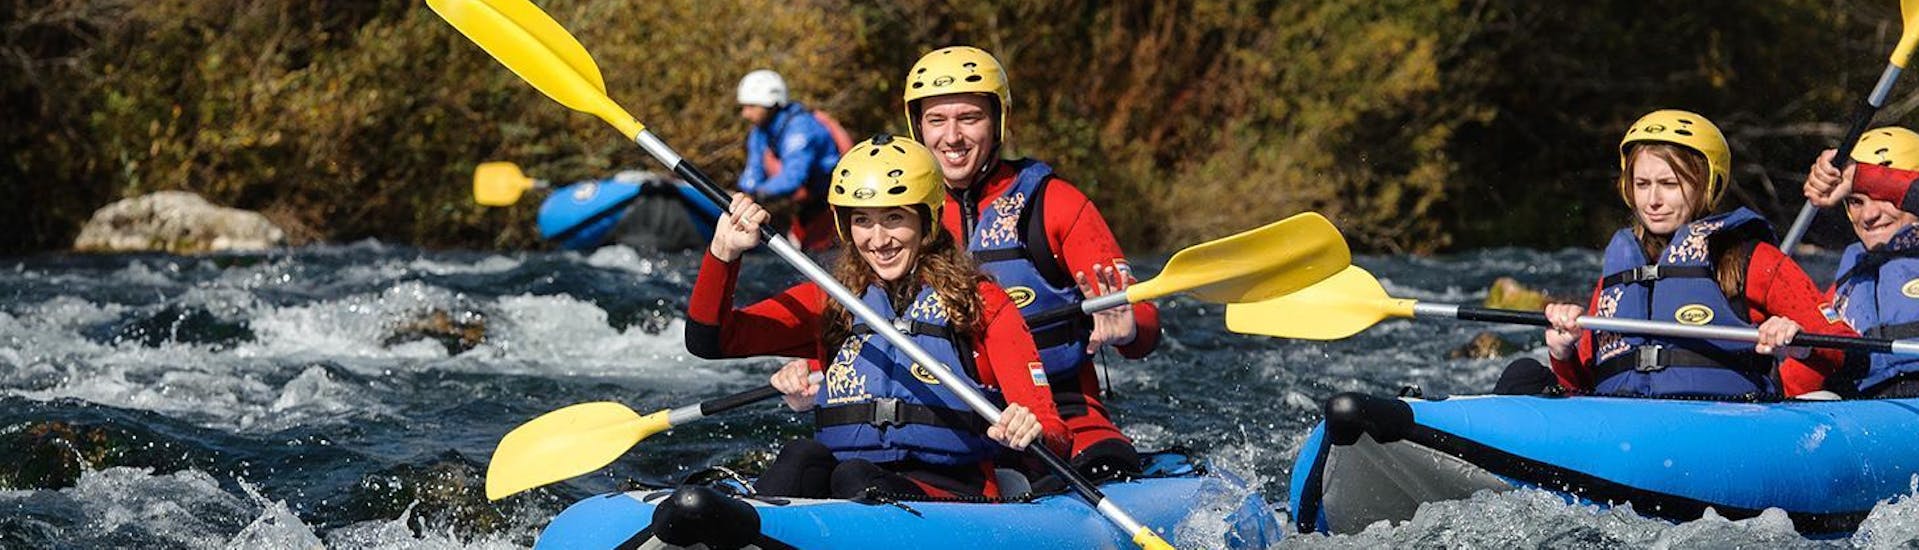 I partecipanti al safari in canoa sul fiume Cetina con Adventure Dalmatia si godono il tempo sul fiume mentre pagaiano tra rapide spumeggianti.